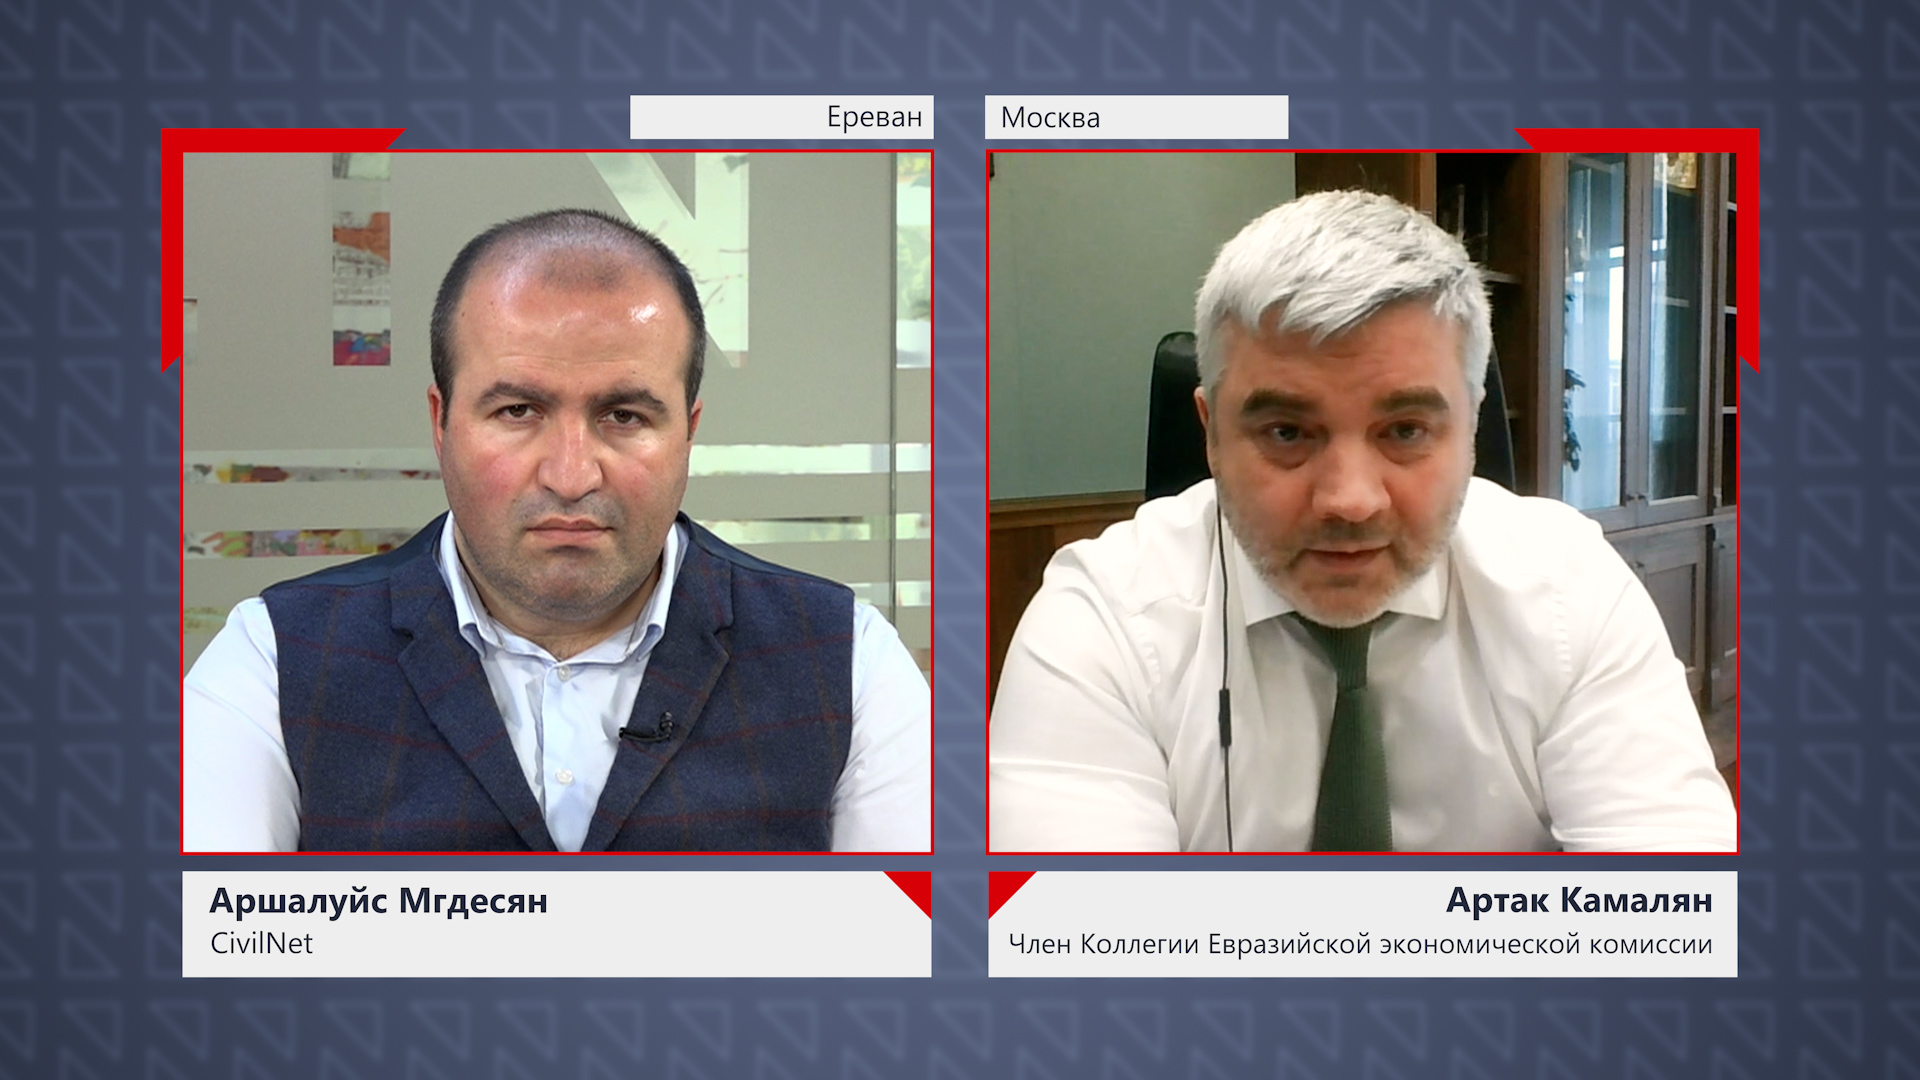 Армения в ЕАЭС должна стать авангардом по использованию электротранспорта: Артак Камалян